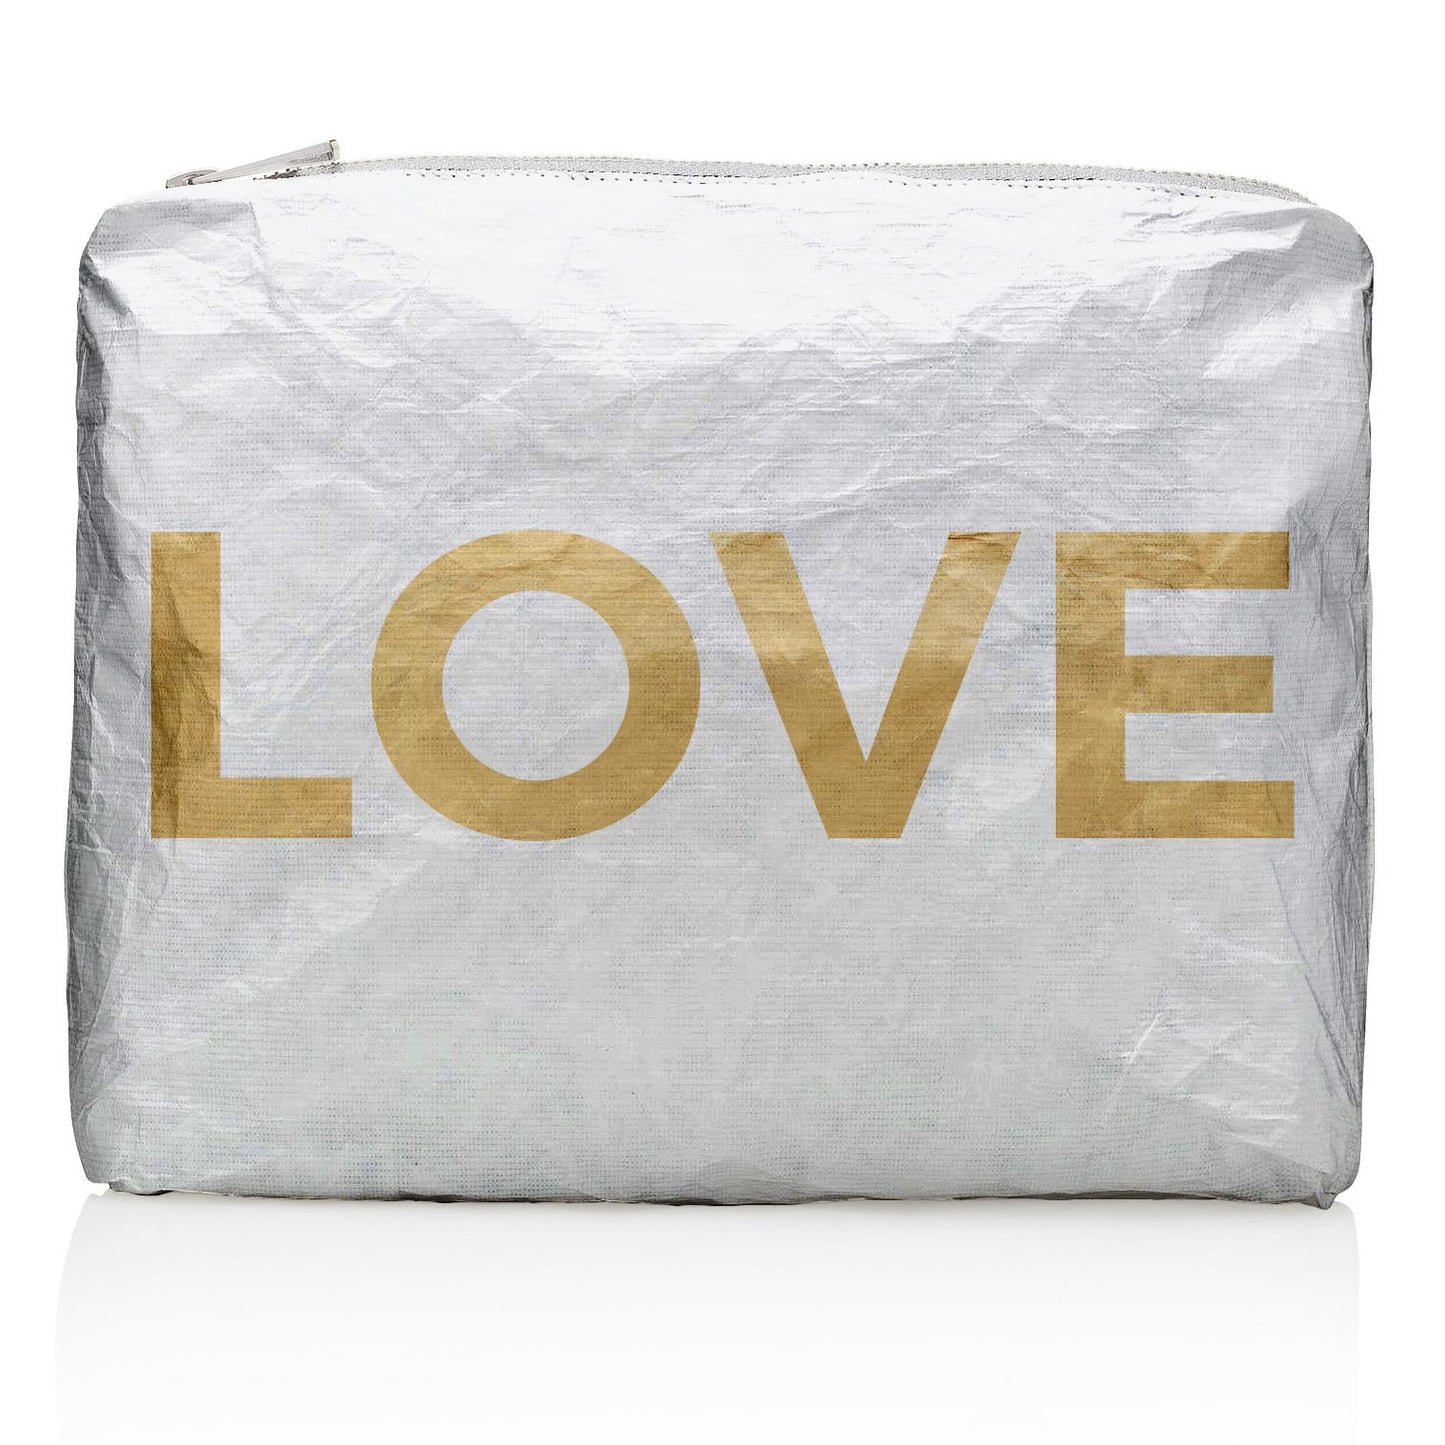 HI LOVE - Medium Pack